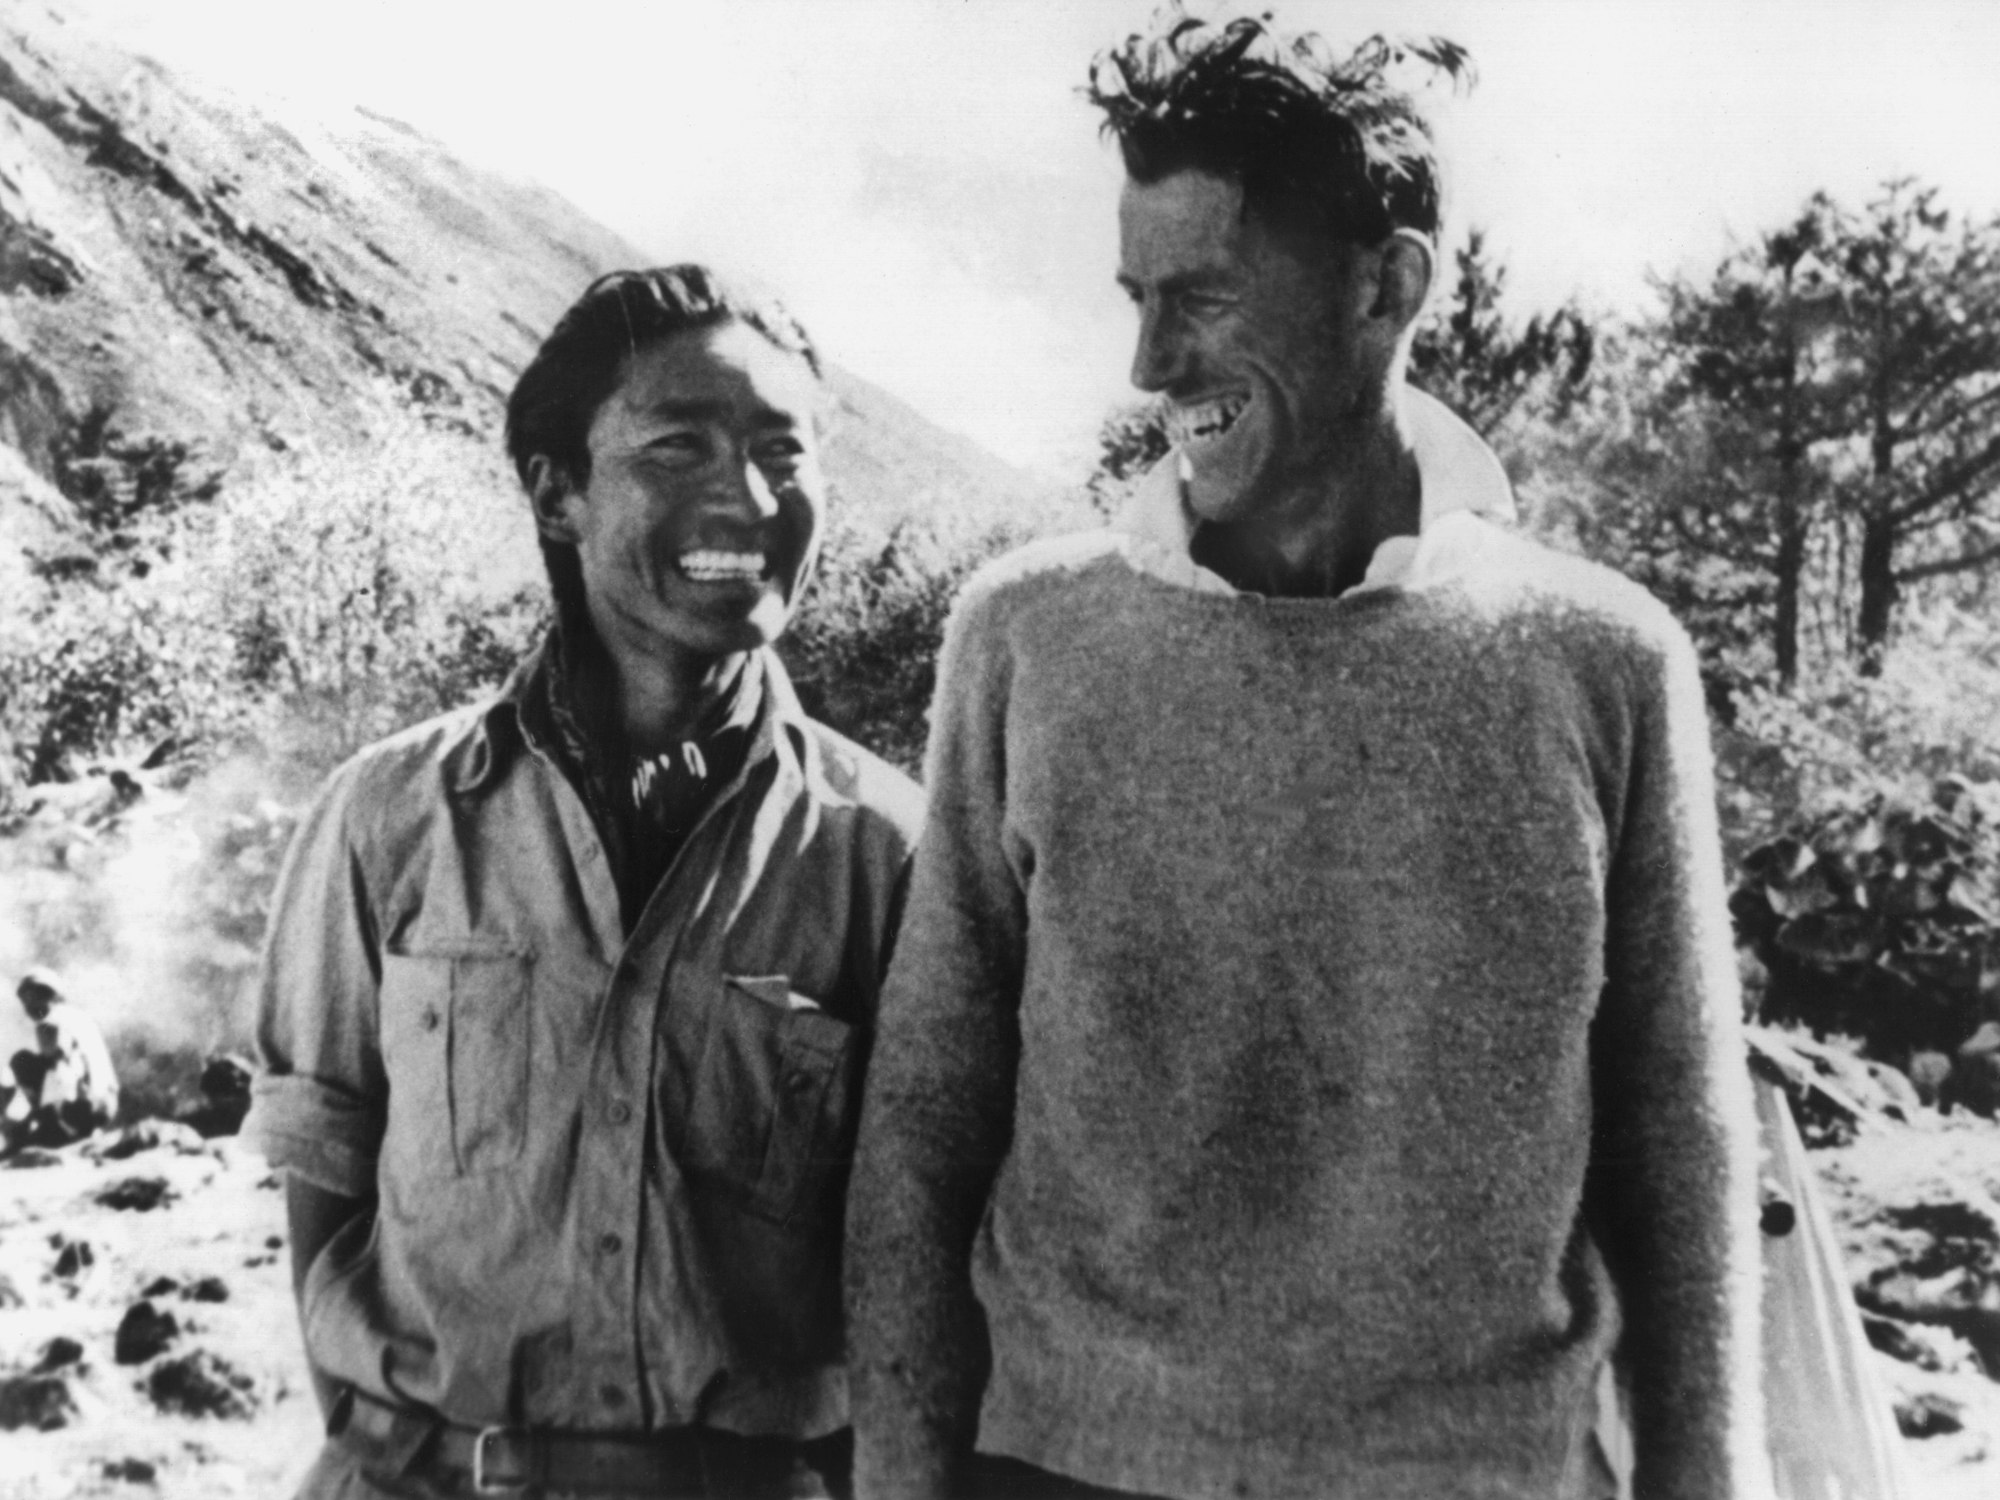 ARCHIV - 31.05.1953, ---: Der neuseeländische Bergsteiger Edmund Hillary (r) mit dem Sherpa Tenzing Norgay (auch "Tiger des Schnees" genannt), der ihn bei der Erstbesteigung des Mount Everest 1953 begleitete.